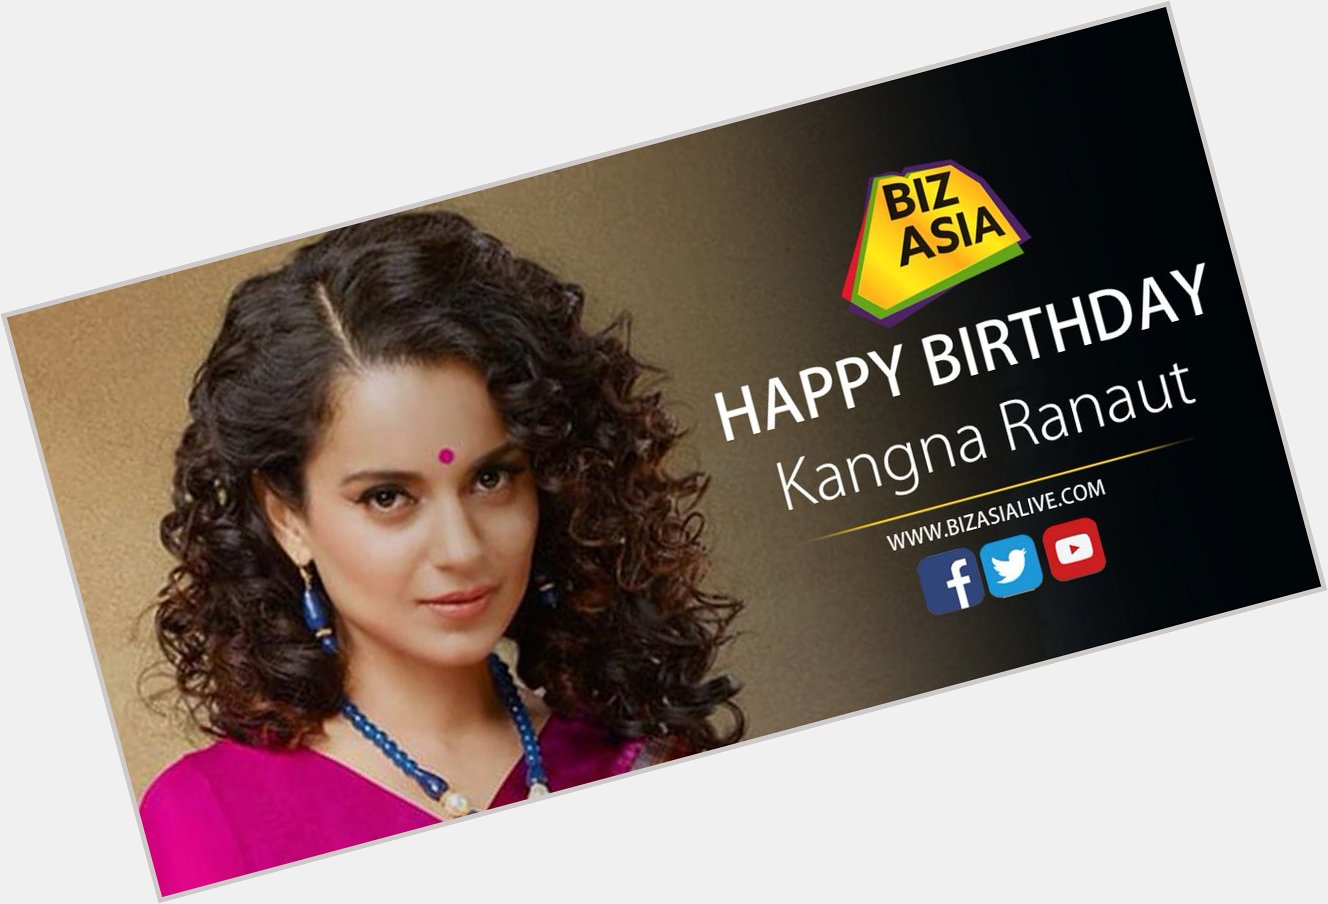  wishes Kangna Ranaut a very happy birthday. 